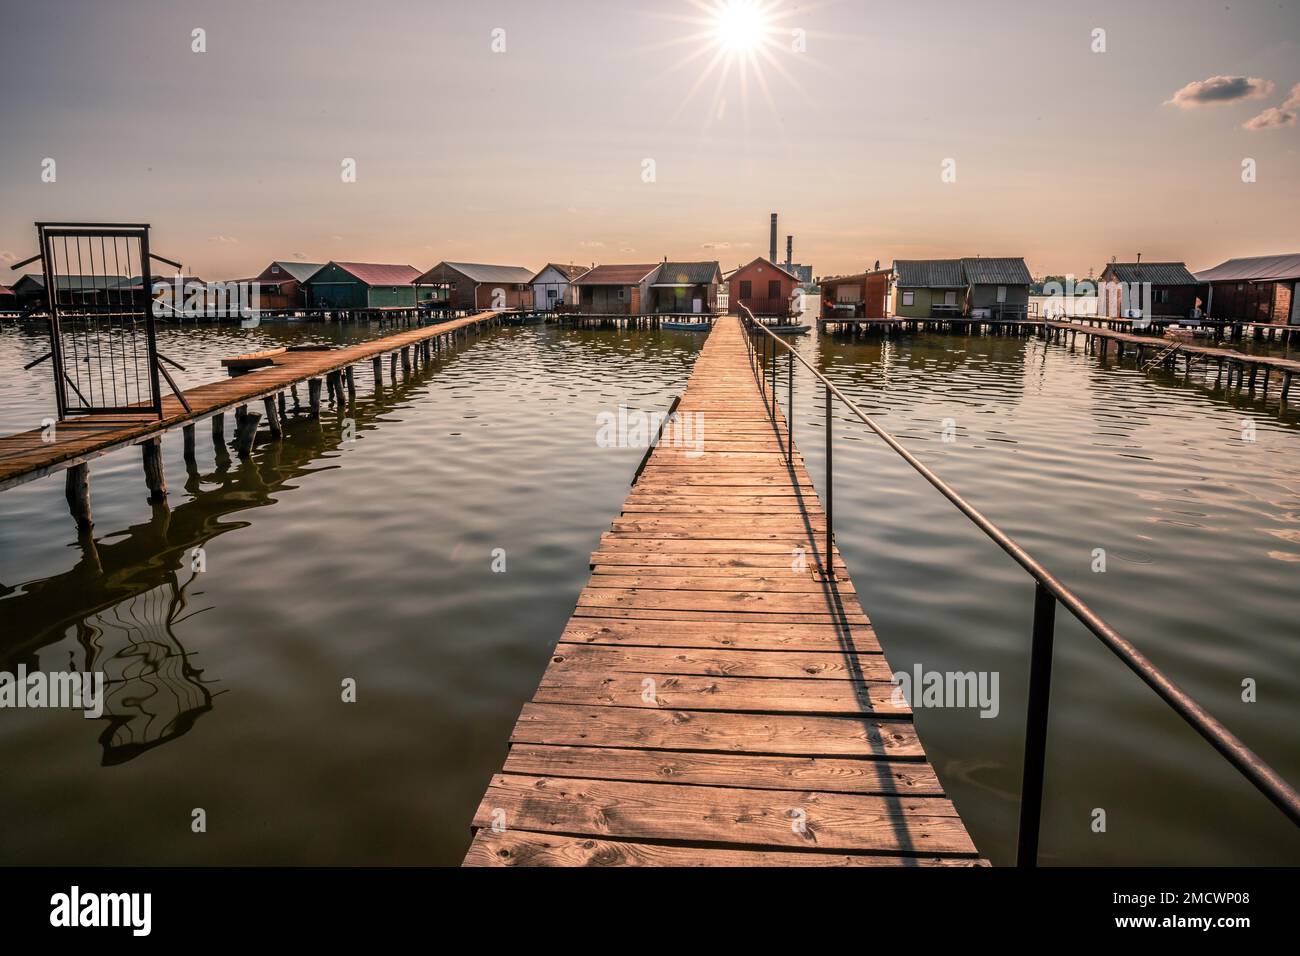 Piccole case di legno con un molo in un lago, servono come case di pesca e vacanze per gli ungheresi. Bellissima foto di paesaggio al tramonto, Lago Bokodi Foto Stock